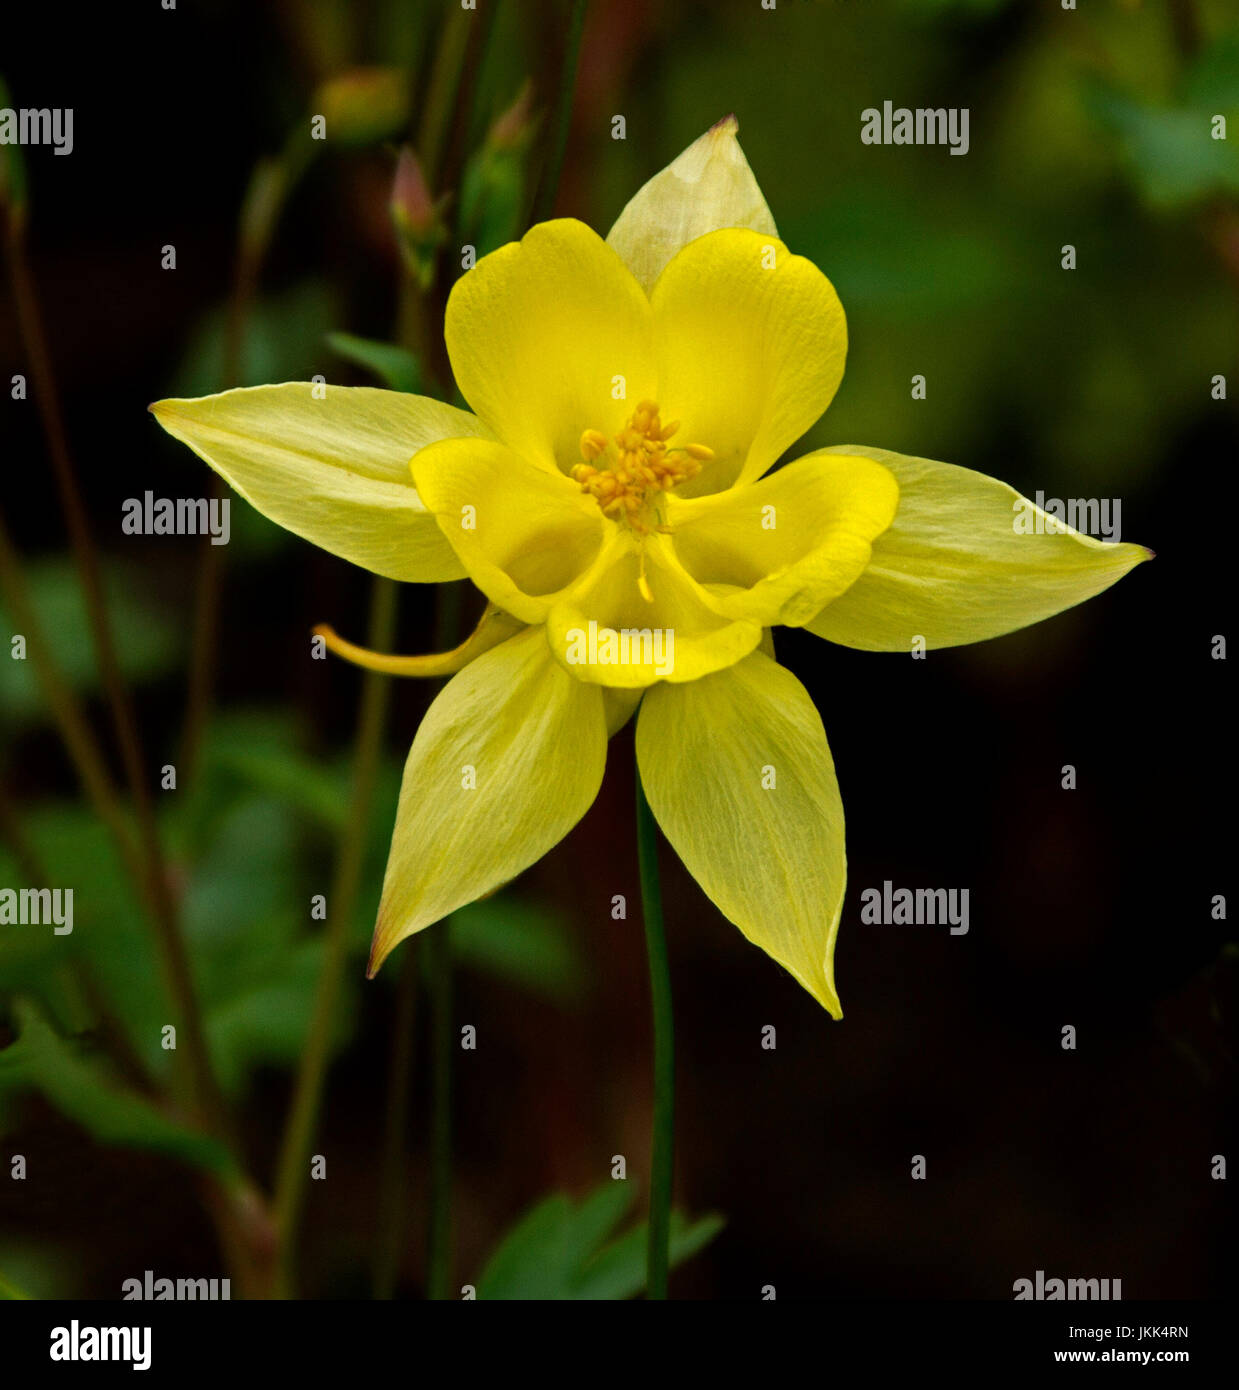 Bright yellow flower of Aquilegia - columbine, against dark green abckground Stock Photo